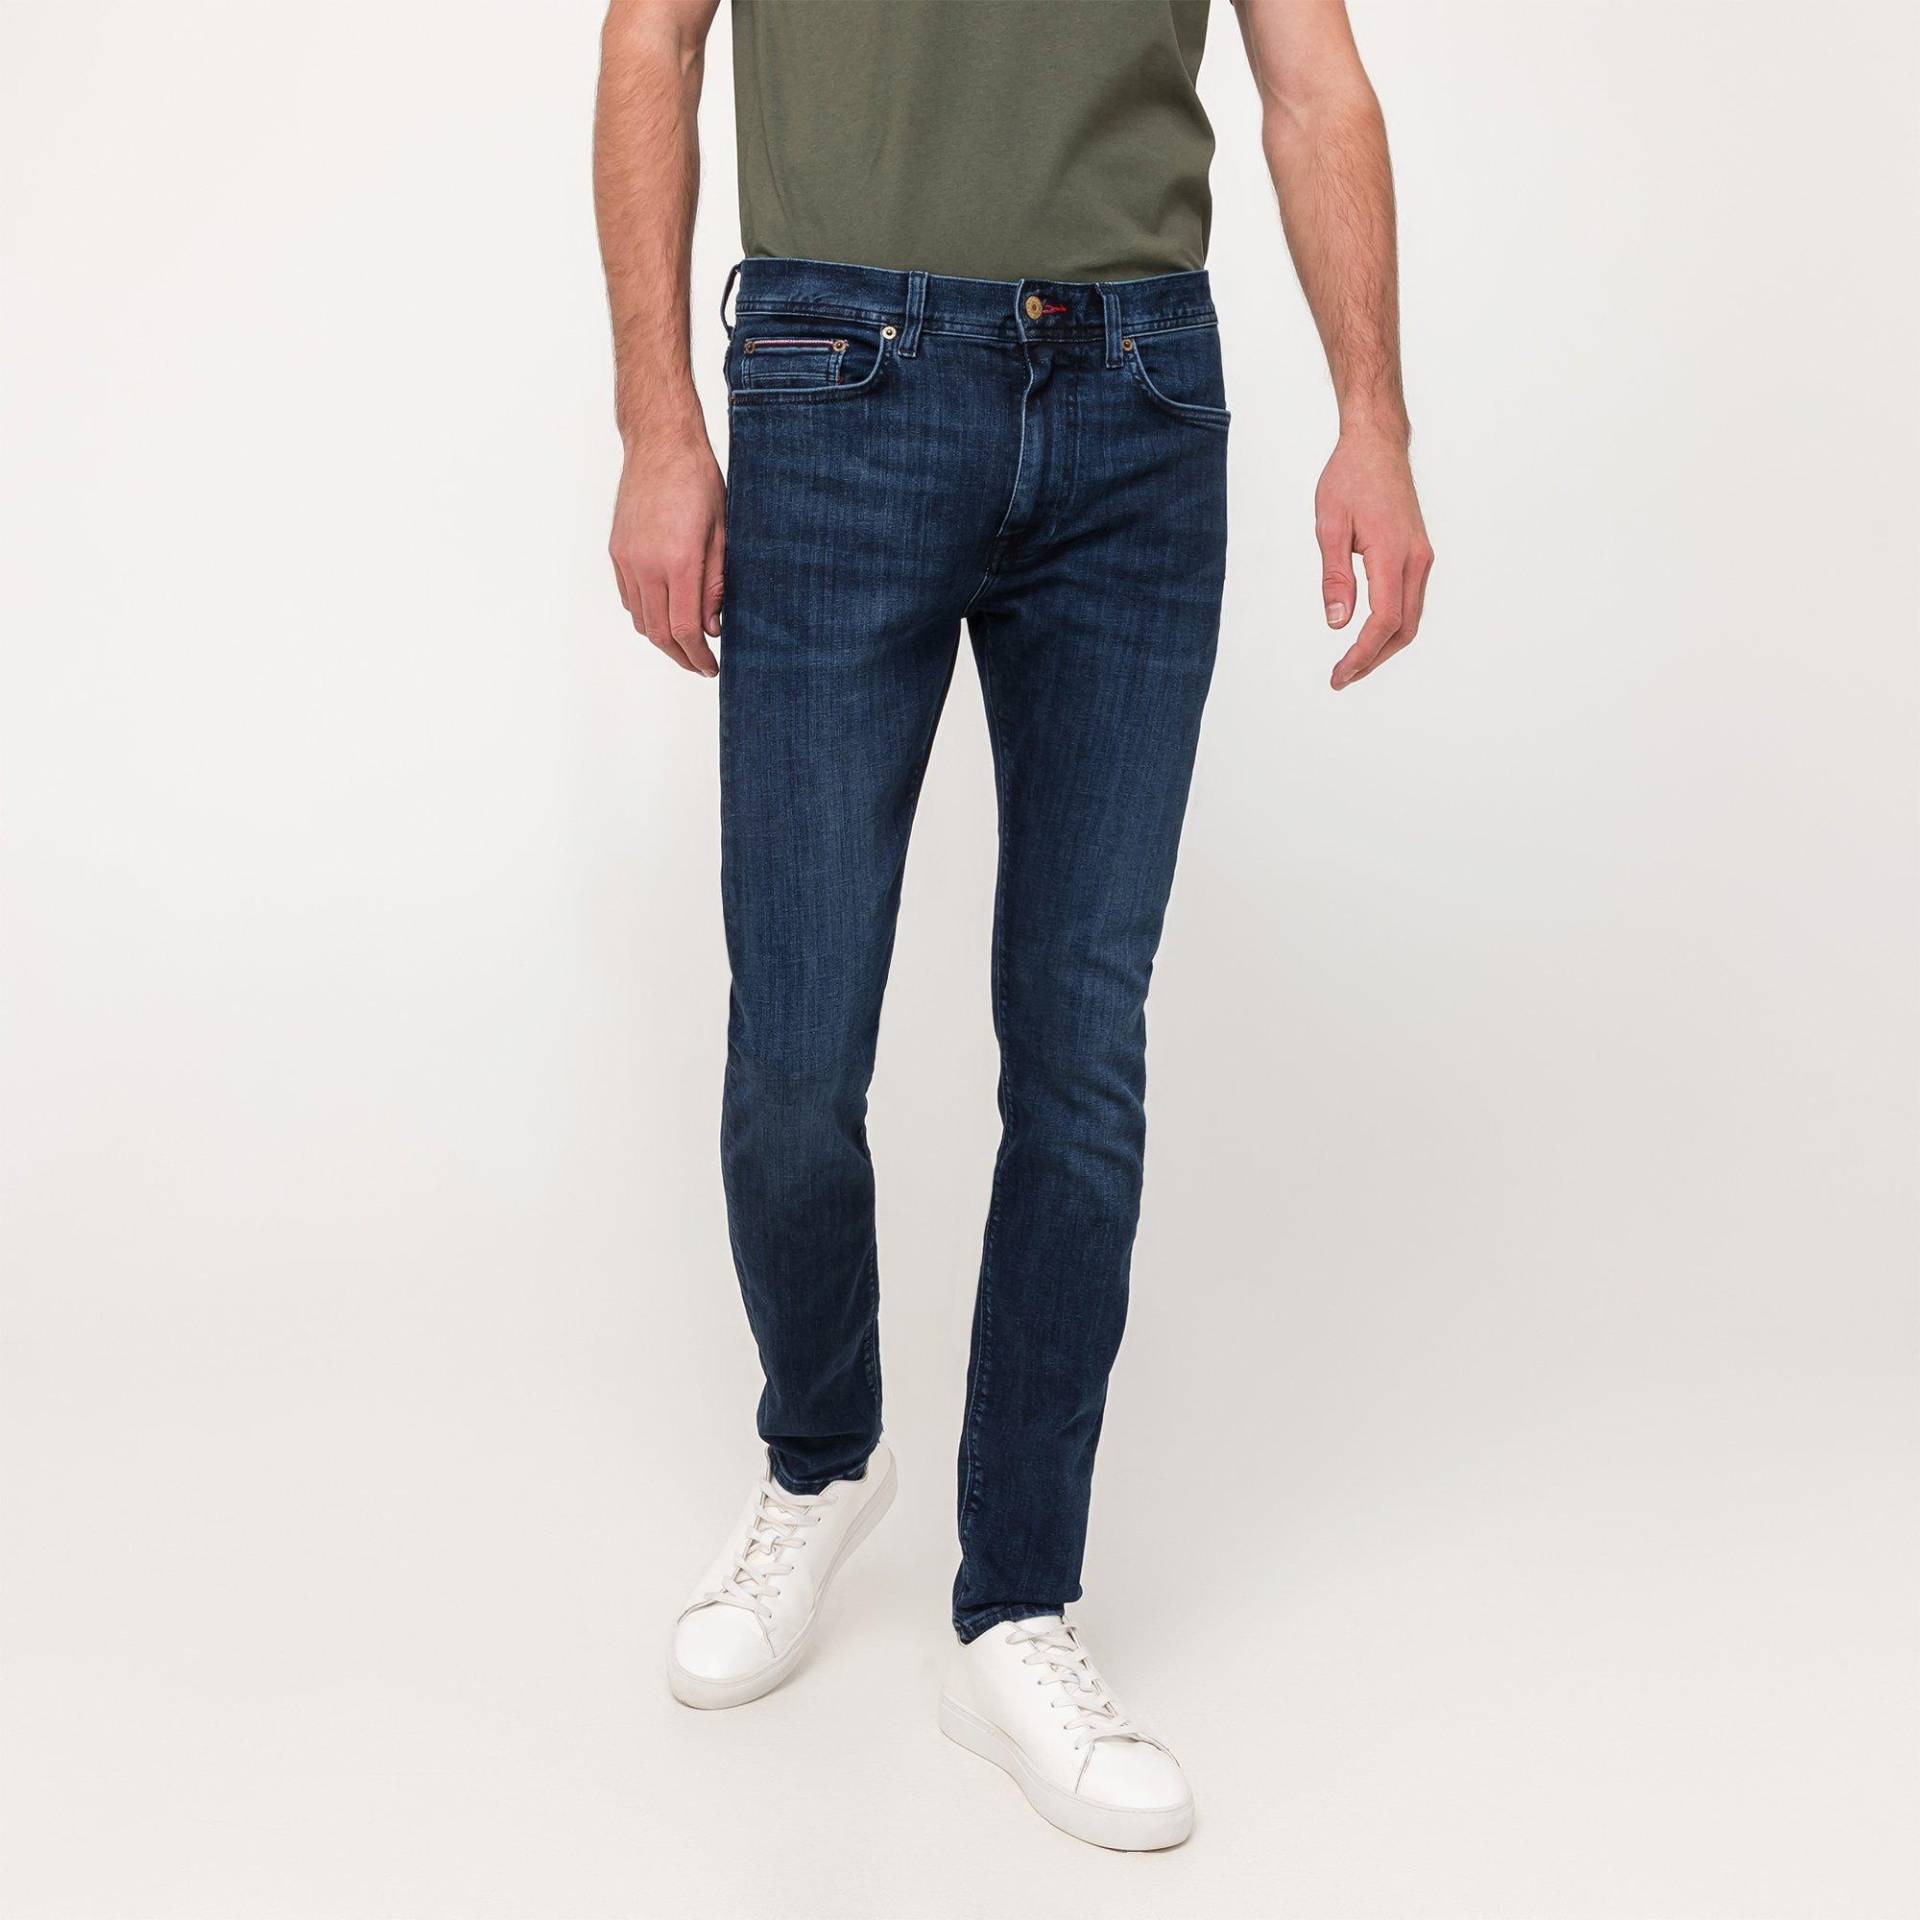 Jeans, Slim Fit Herren Indigo L32/W33 von TOMMY HILFIGER